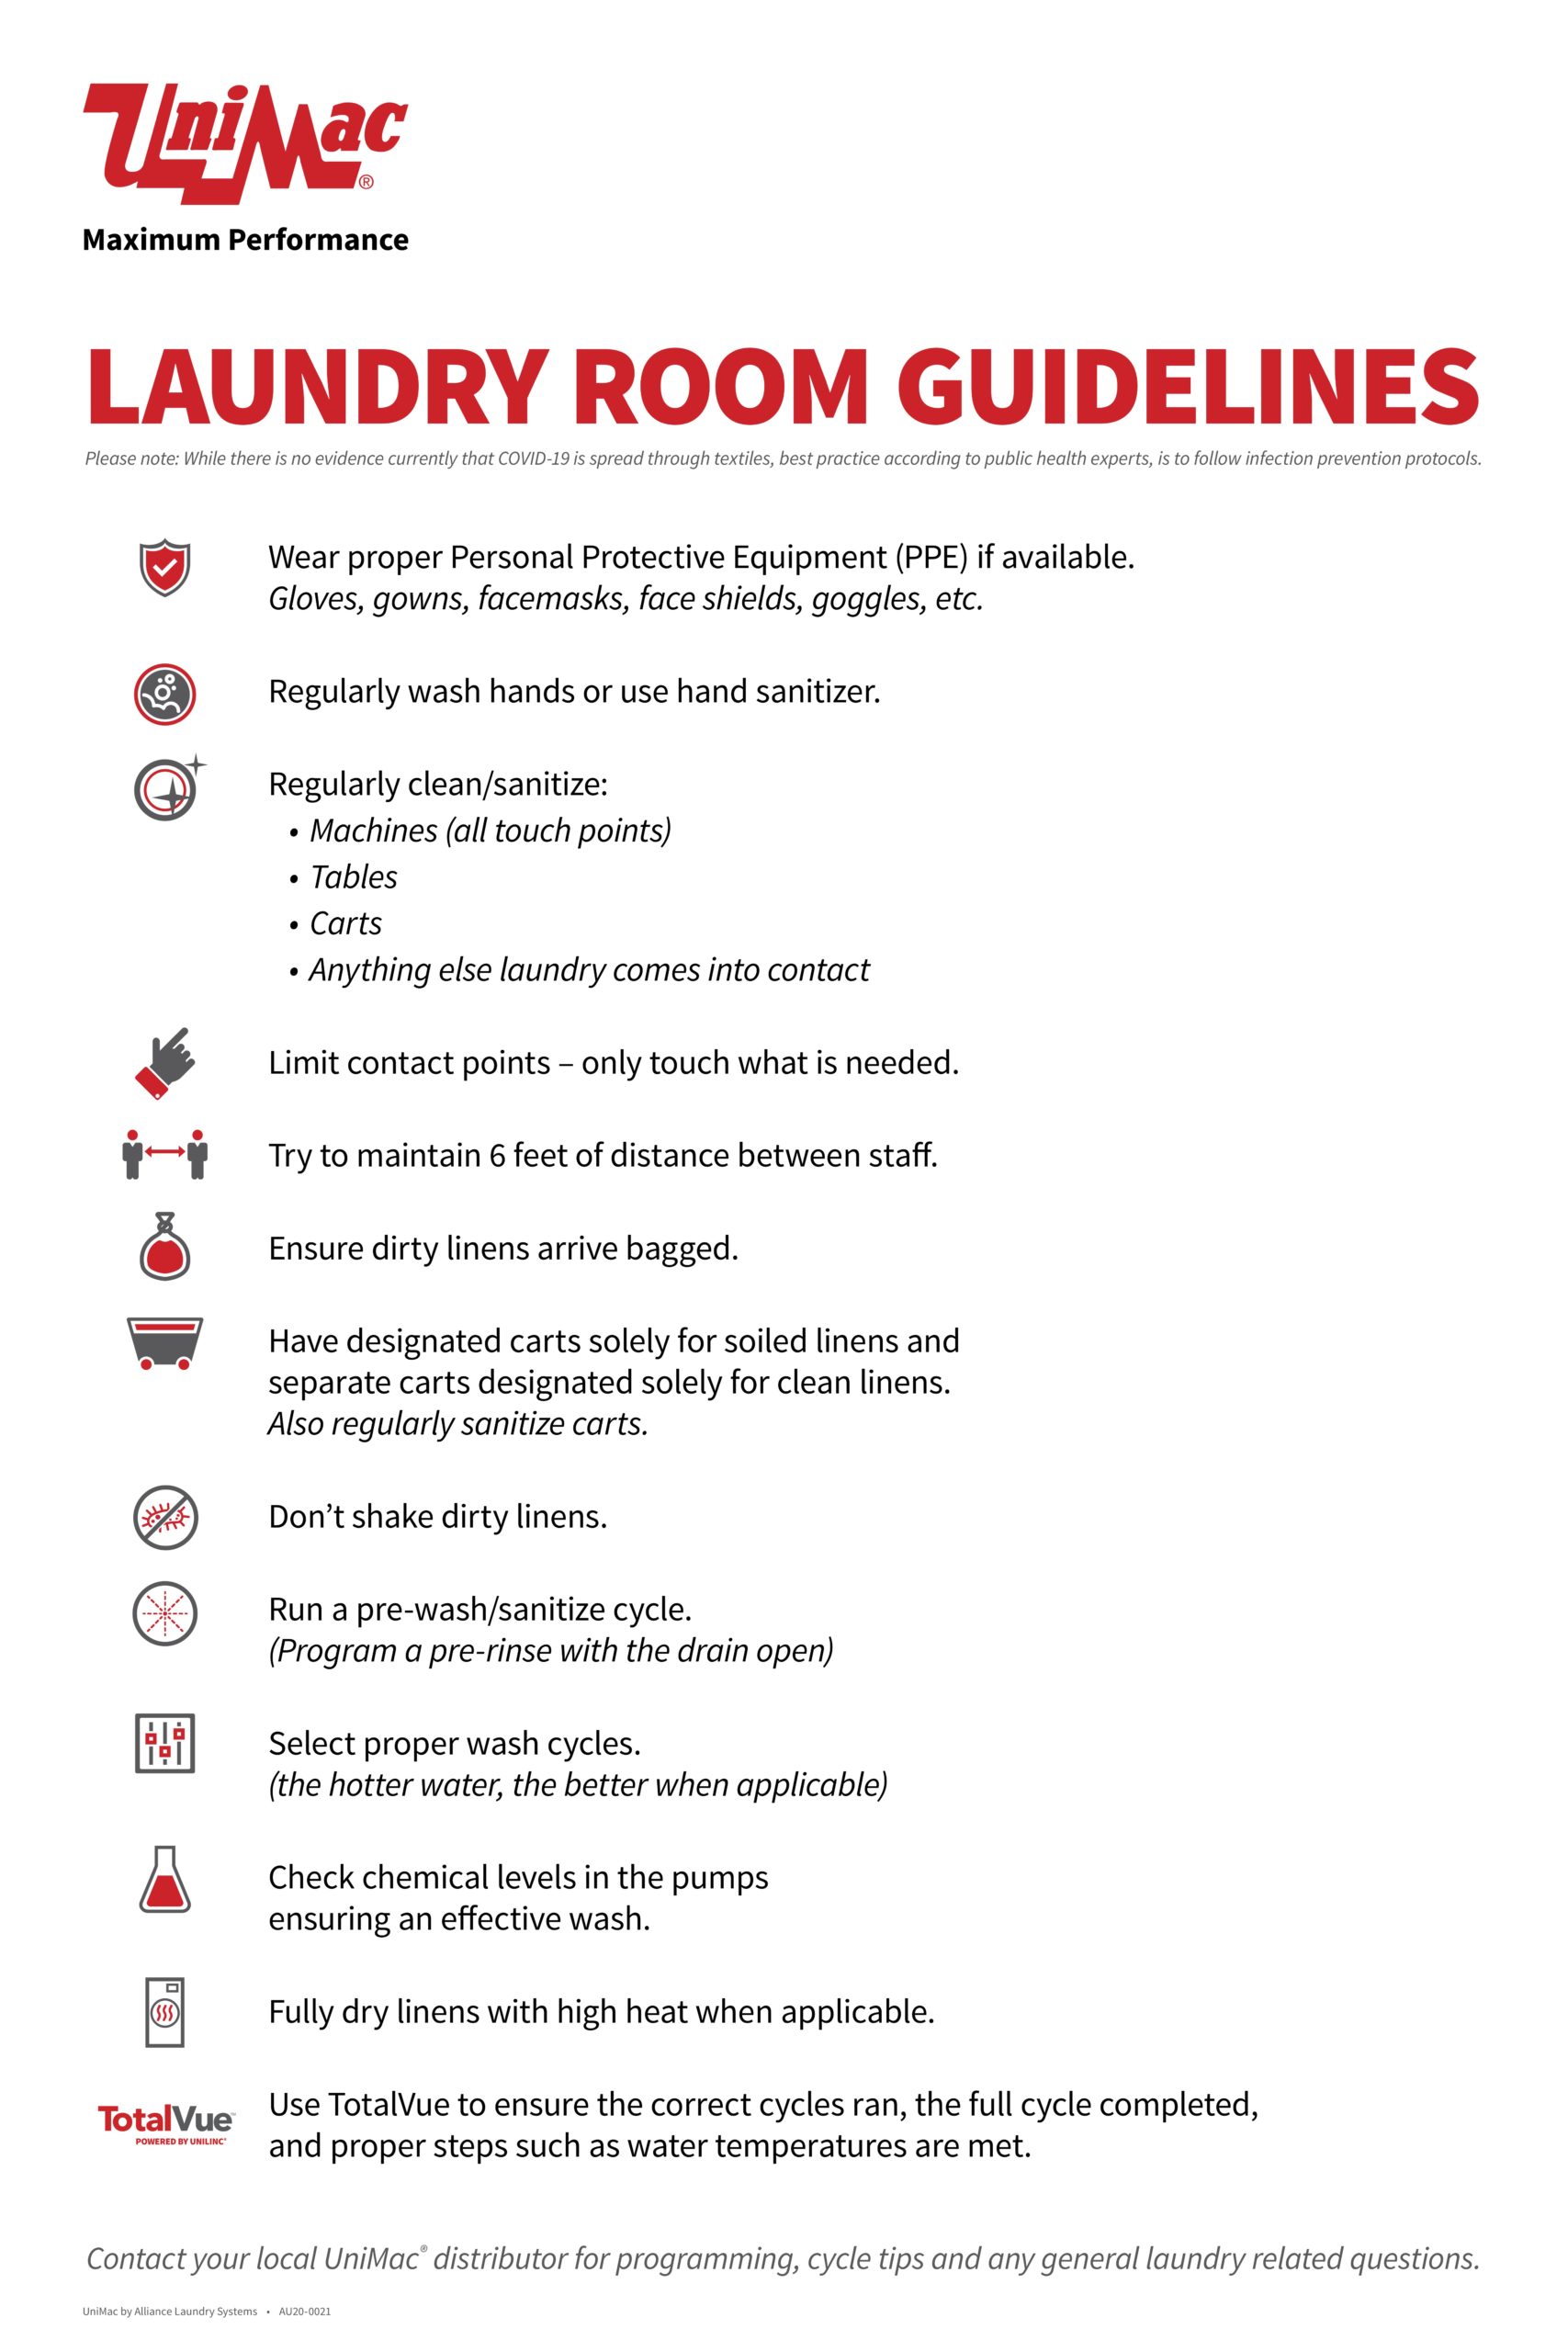 Laundry Room Etiquette List